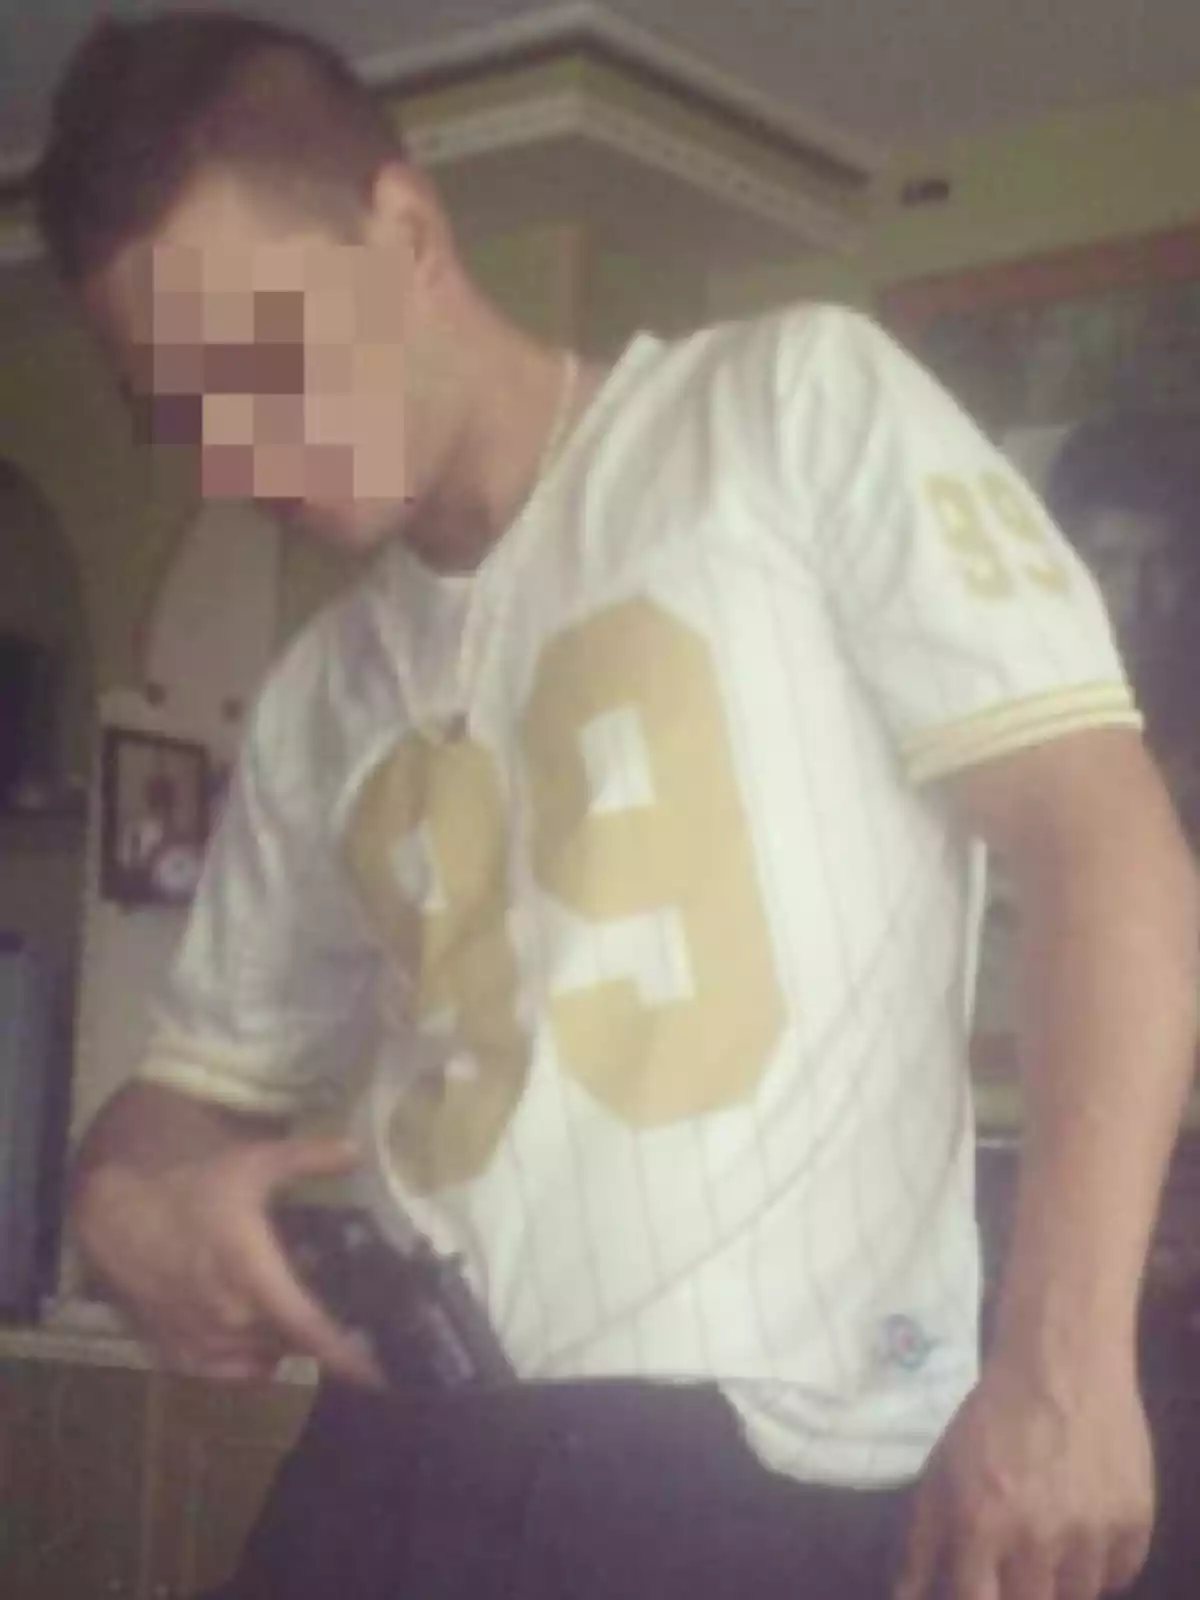 Un hombre con el rostro pixelado viste una camiseta blanca con el número 99 en dorado y sostiene una pistola.